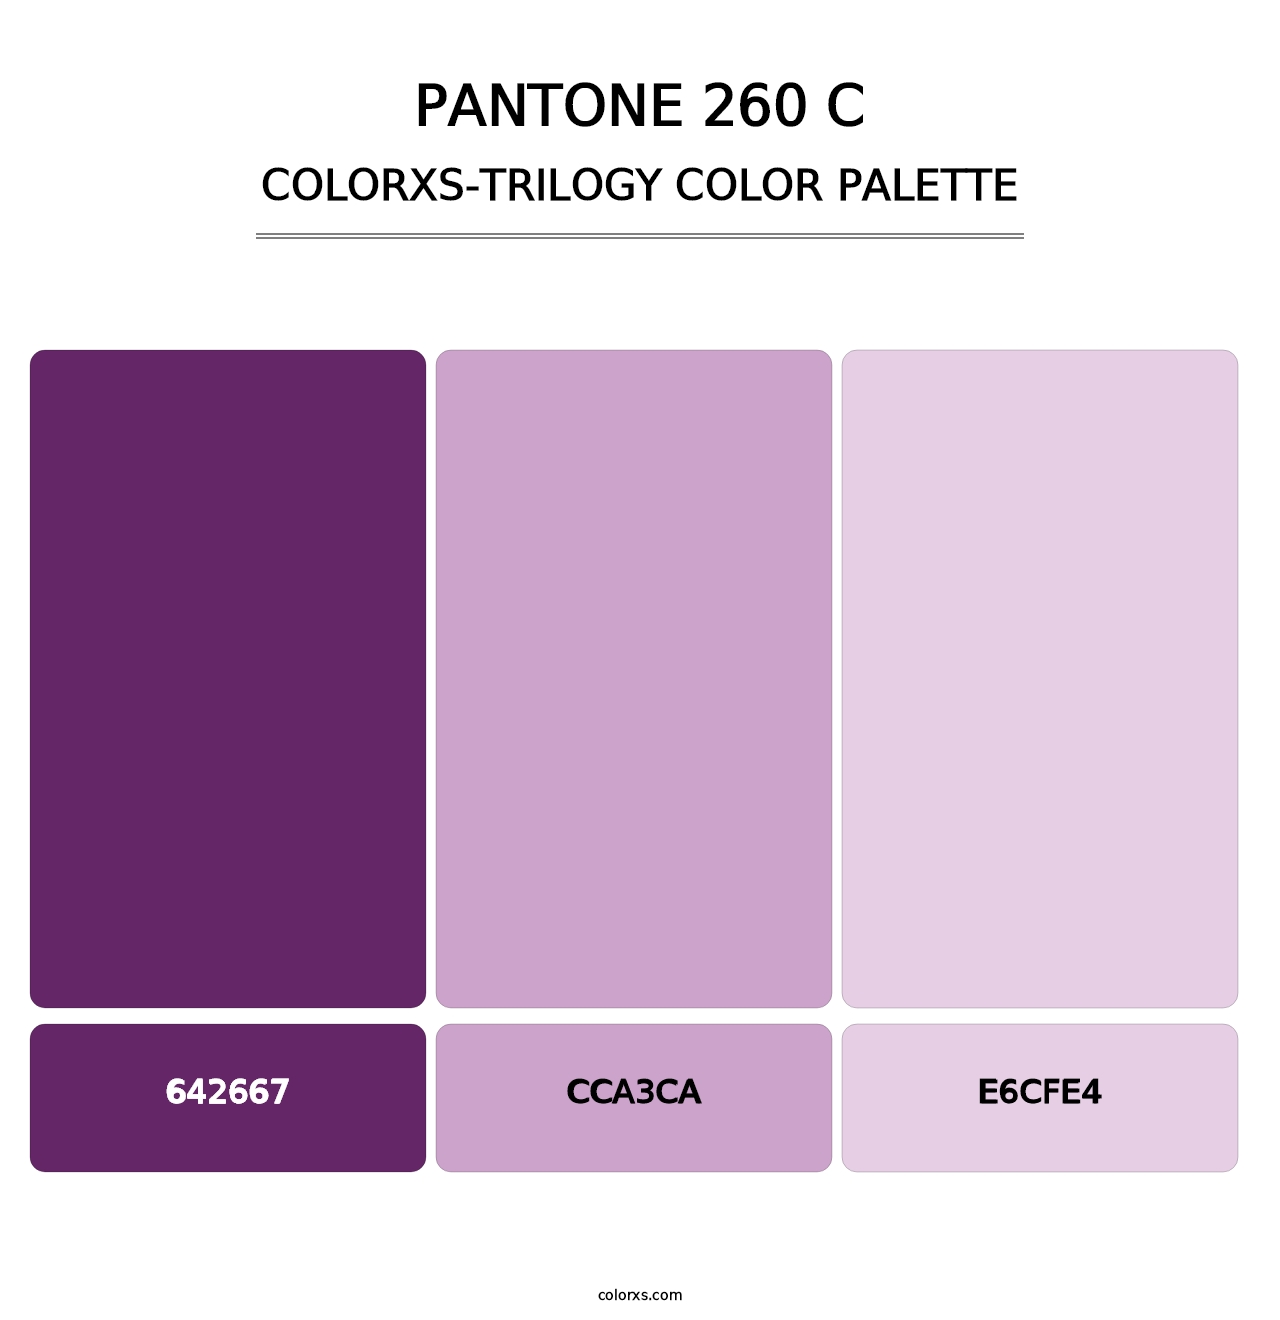 PANTONE 260 C - Colorxs Trilogy Palette